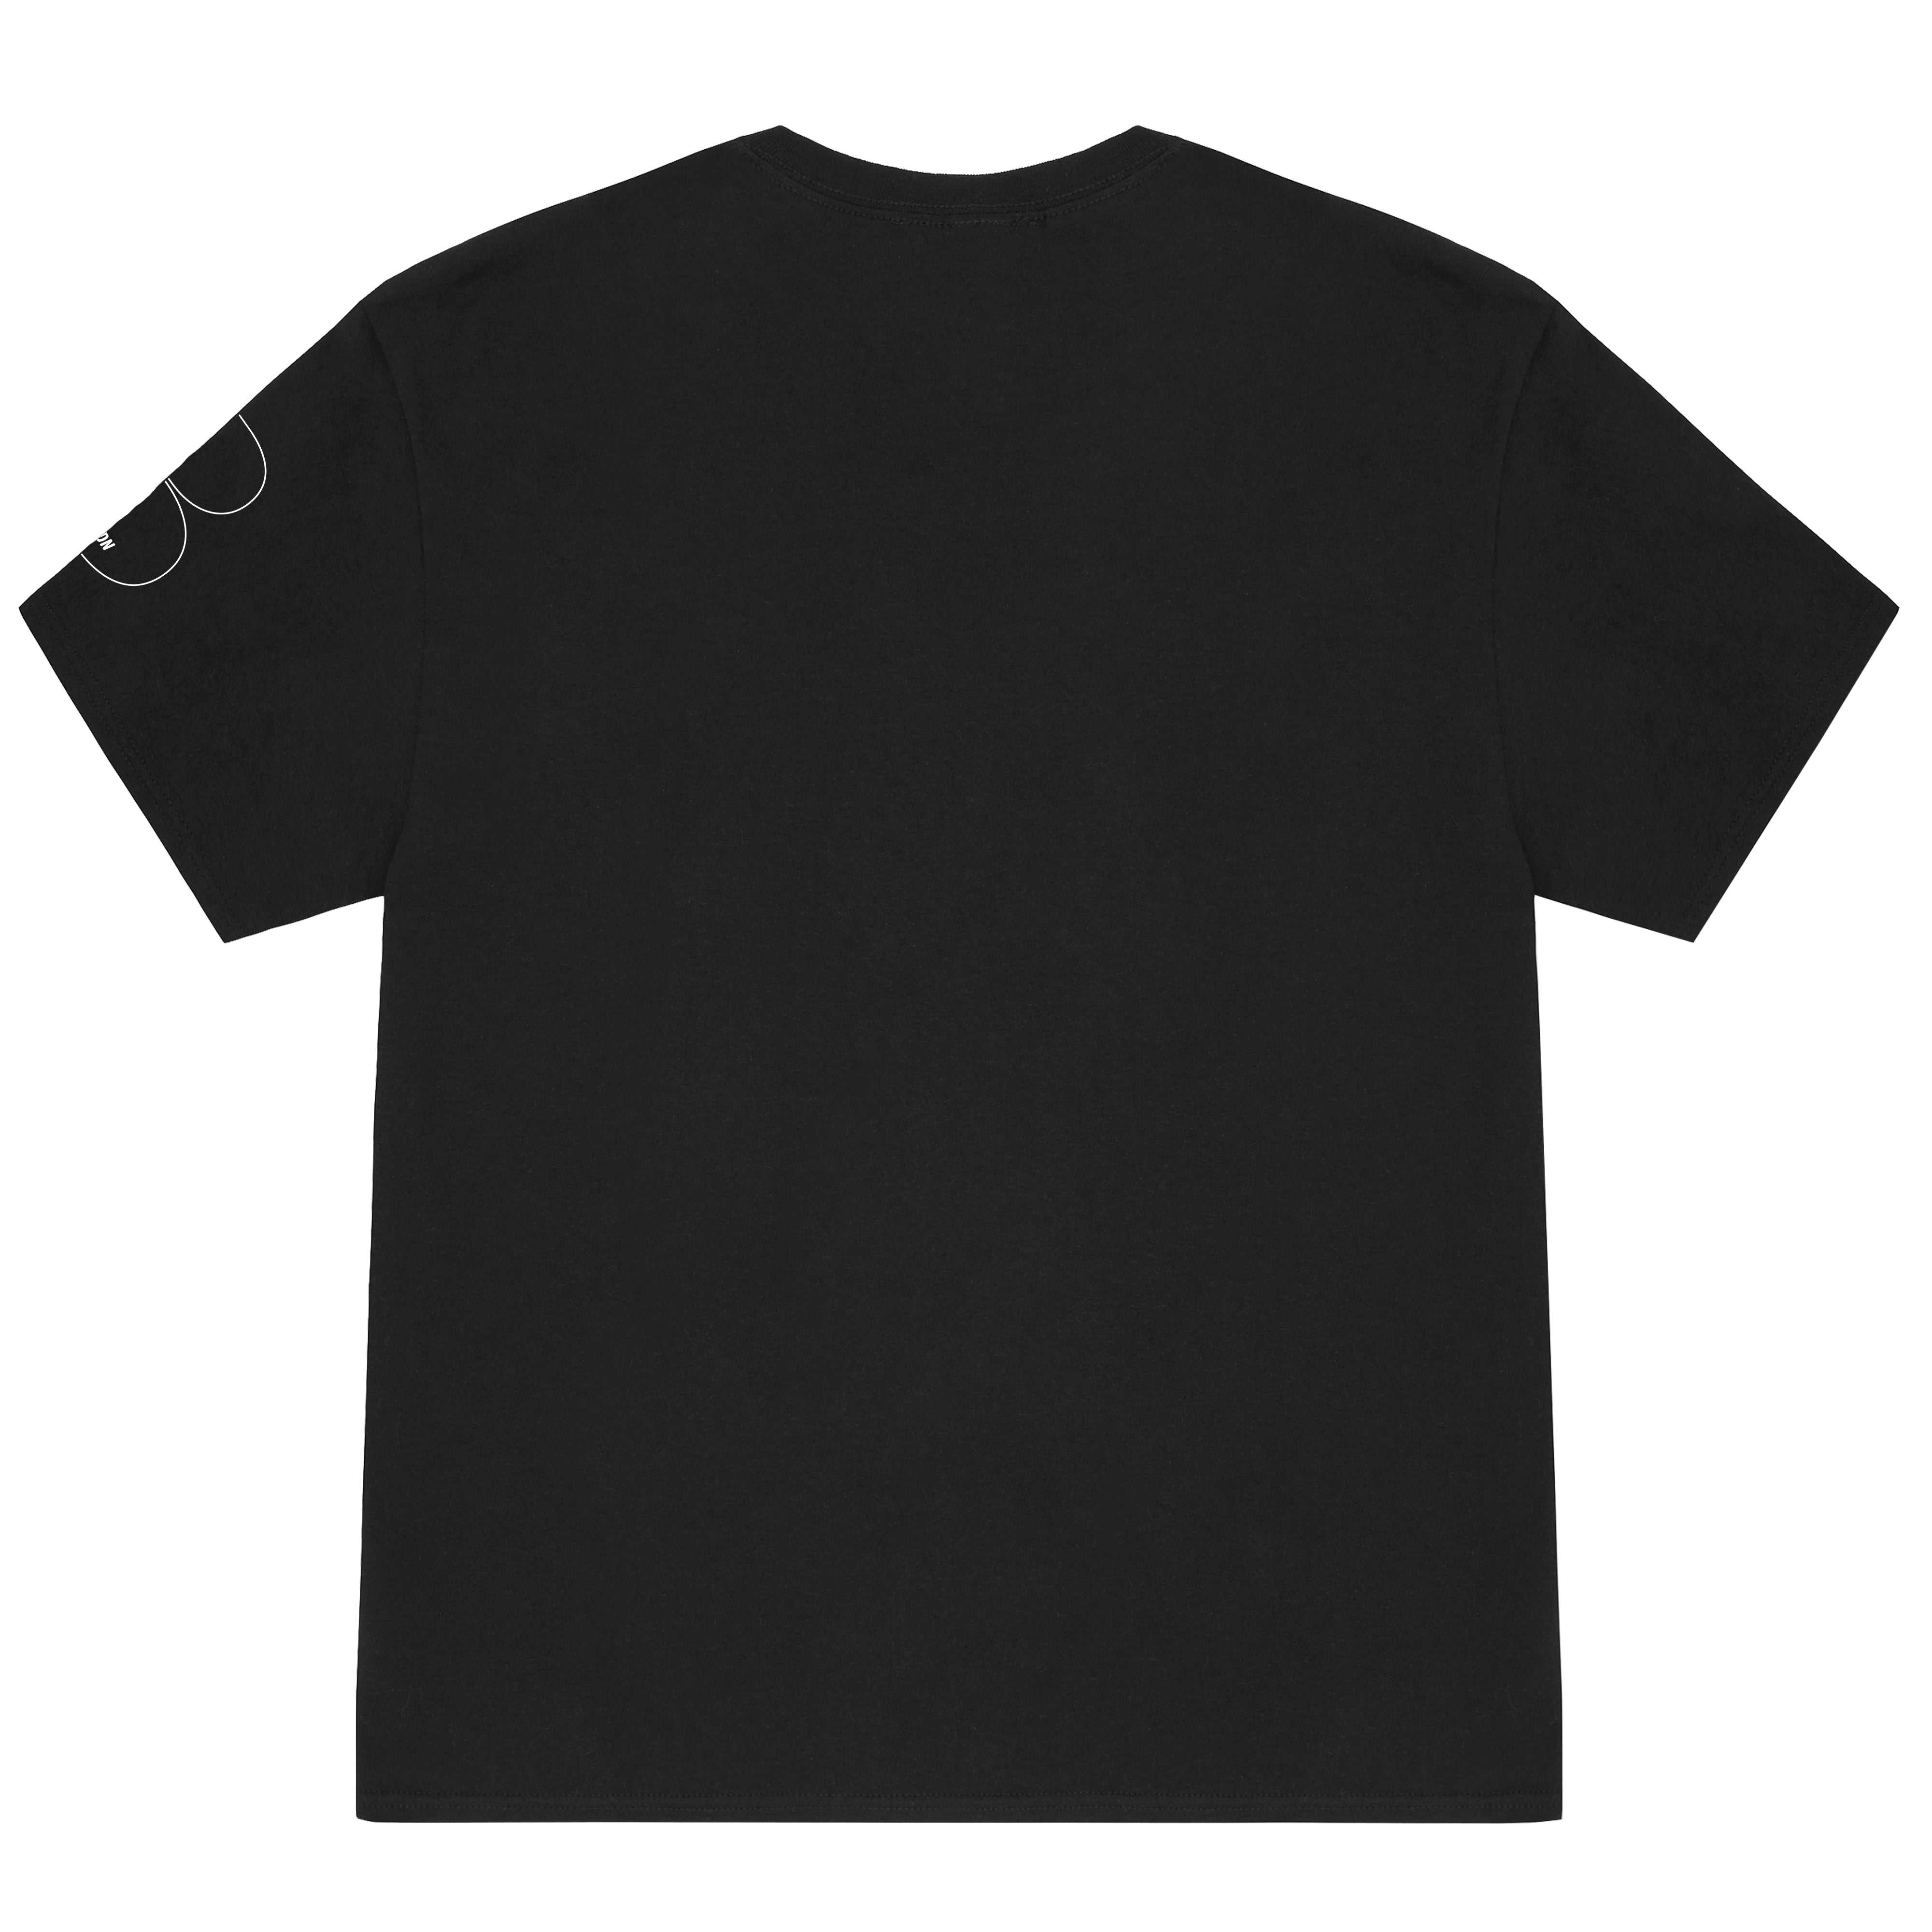 Black OG Outline T-Shirt - White Print